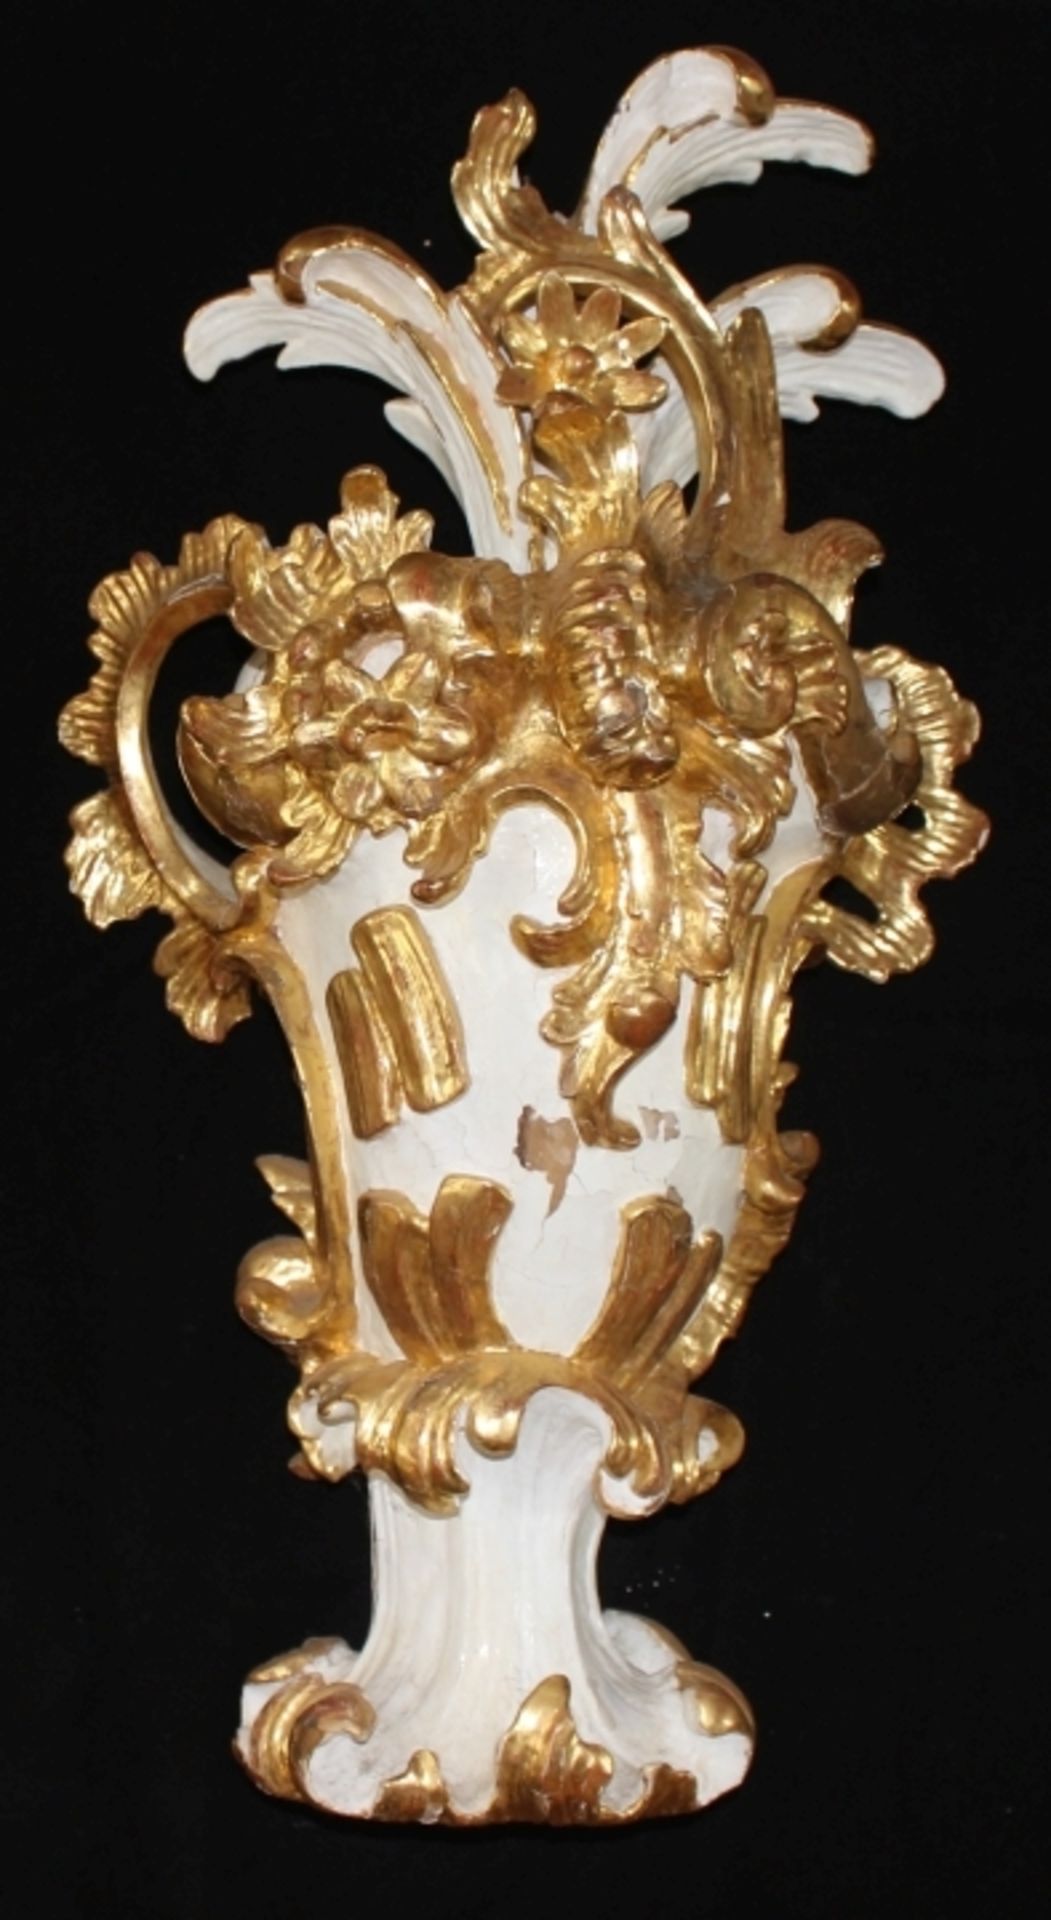 Aufsatzvase - Barock 18.Jahrhundert Holz 3/4 plastisch geschnitzt, gefaßt in weiß und gold, verziert